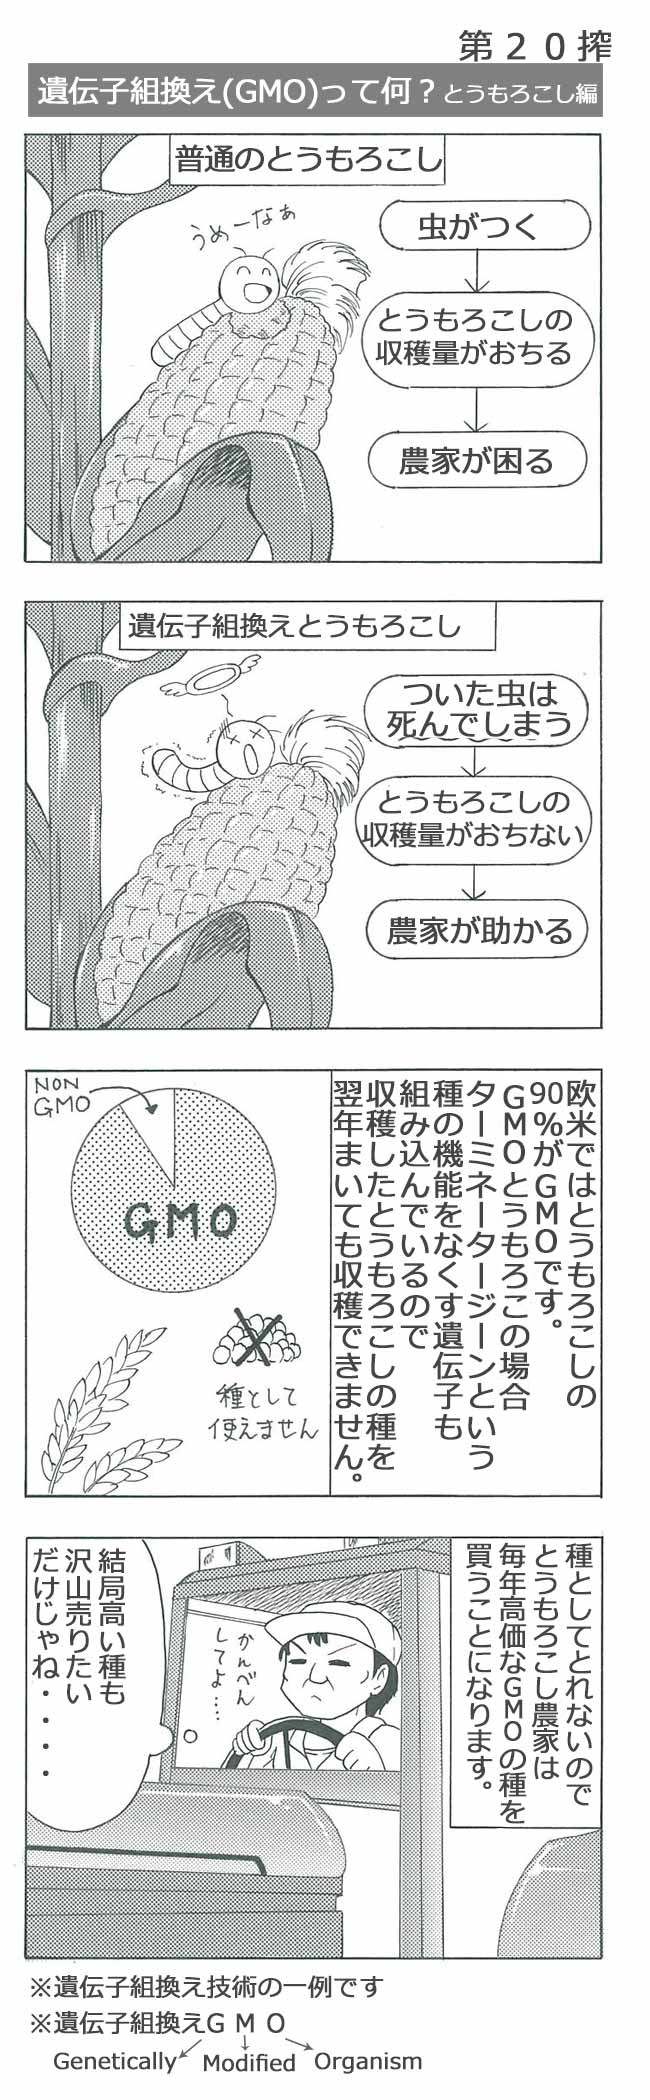 遺伝子組換え(GMO)って何？とうもろこし 